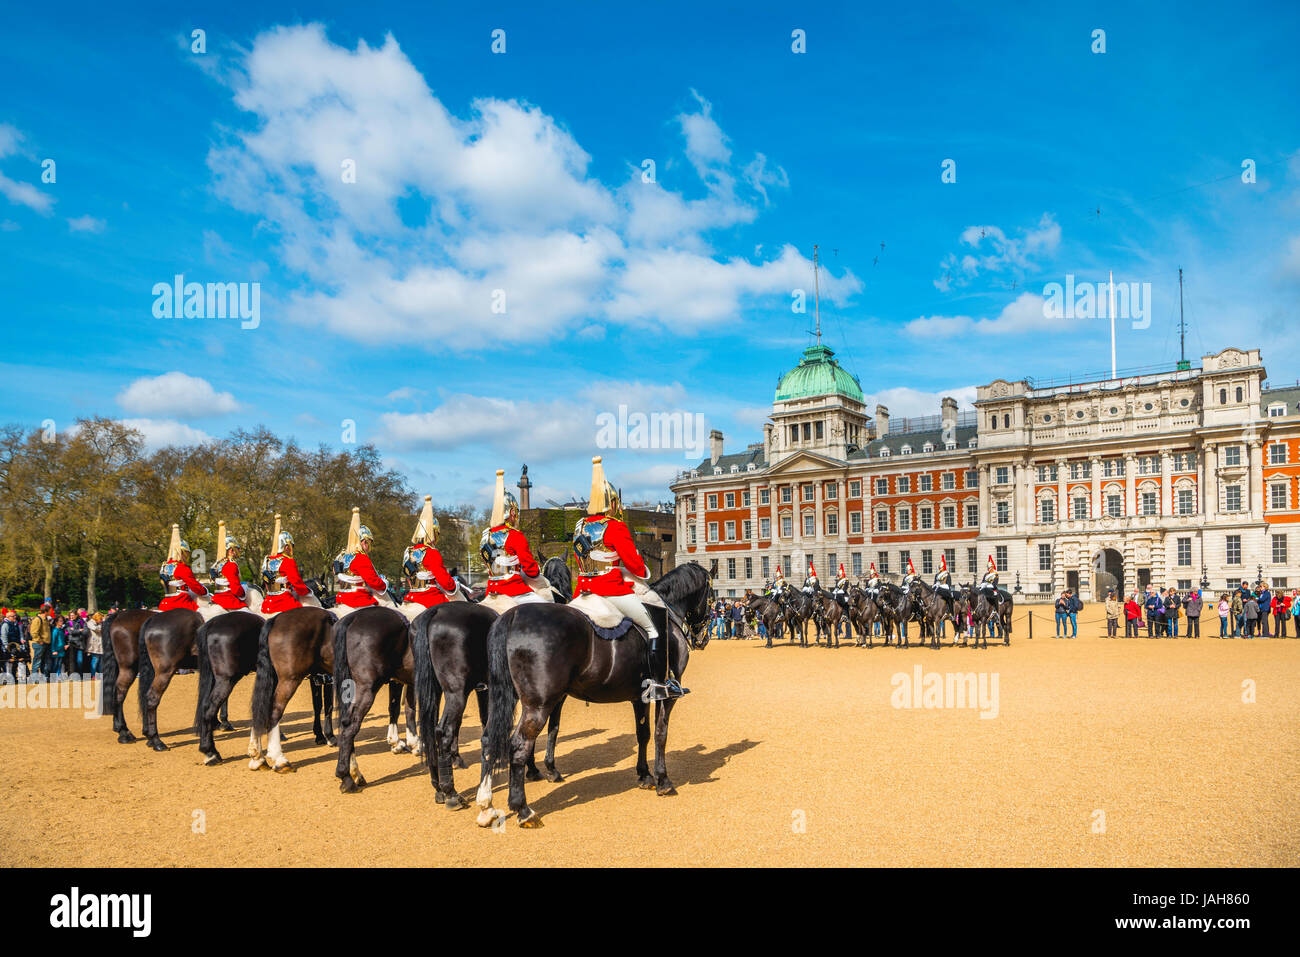 Garde royale en uniforme rouge sur les chevaux, les sauveteurs, les bleus et les Royals, Household Cavalry régiment monté, parade ground Banque D'Images